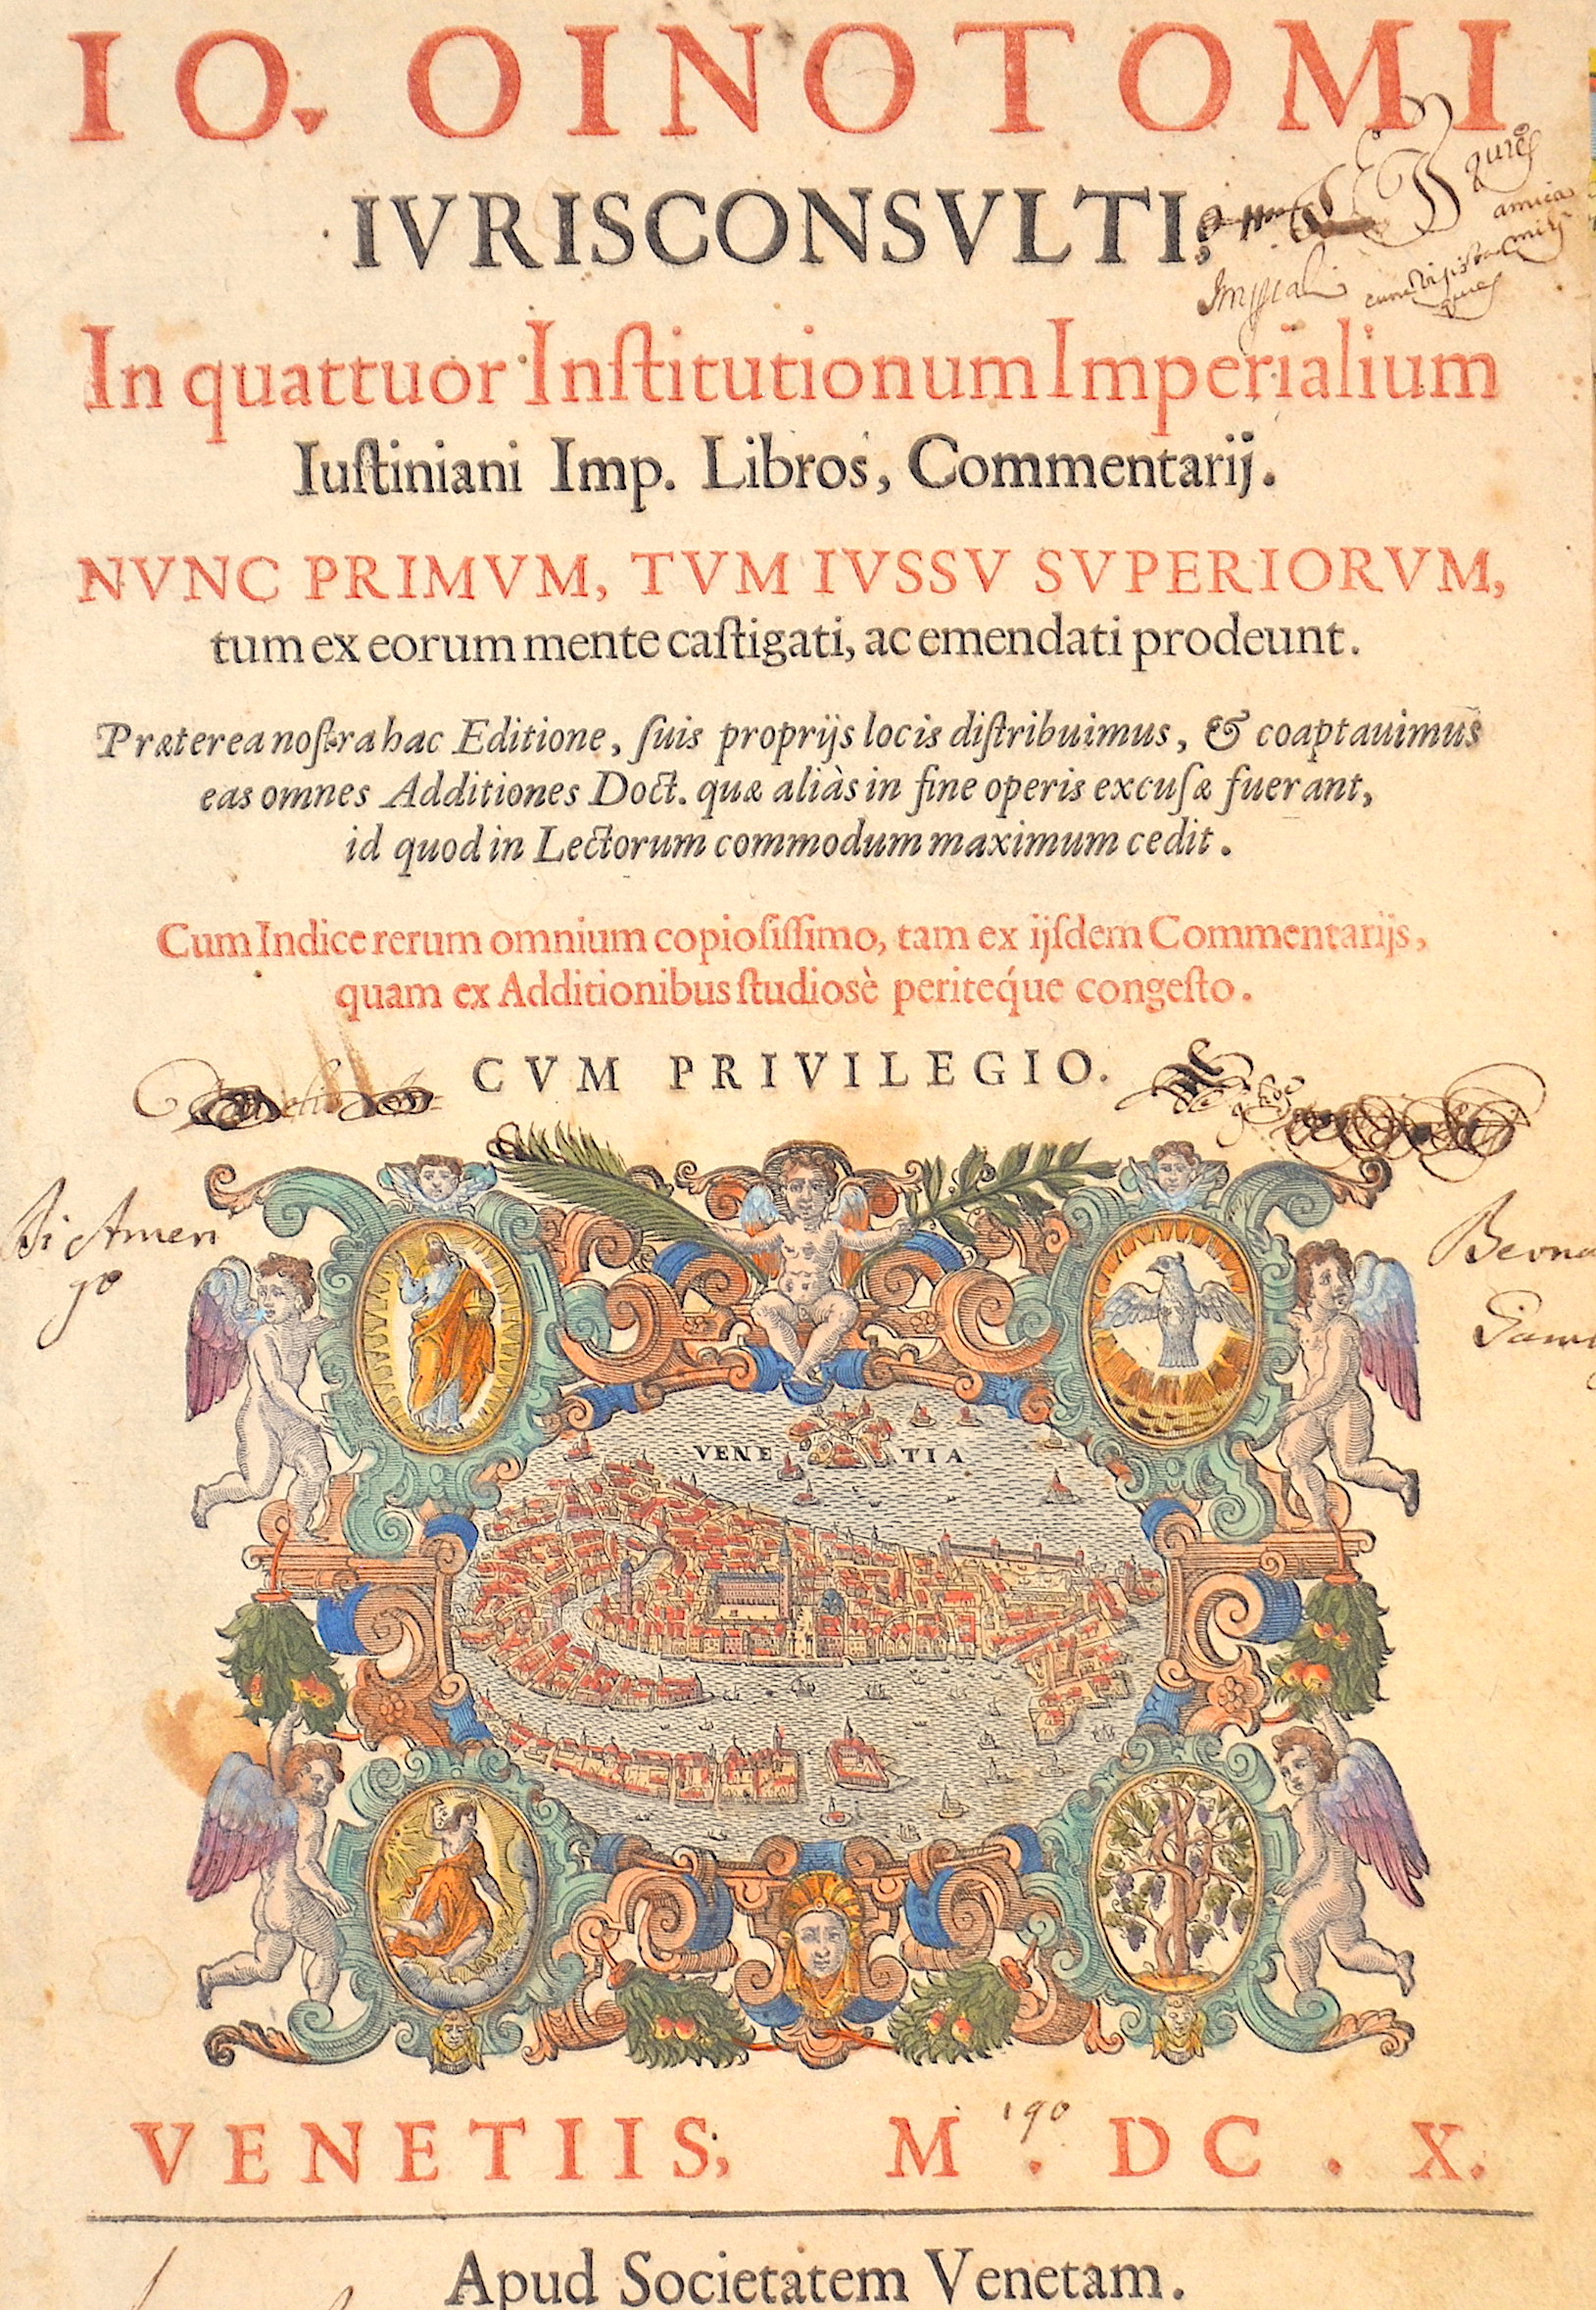 Schneidewein Johann Io. Oinotomi iurisconsulti n quattuor, Institutionum Imperialium Iustiniani Imp. Libros, Commentarij.